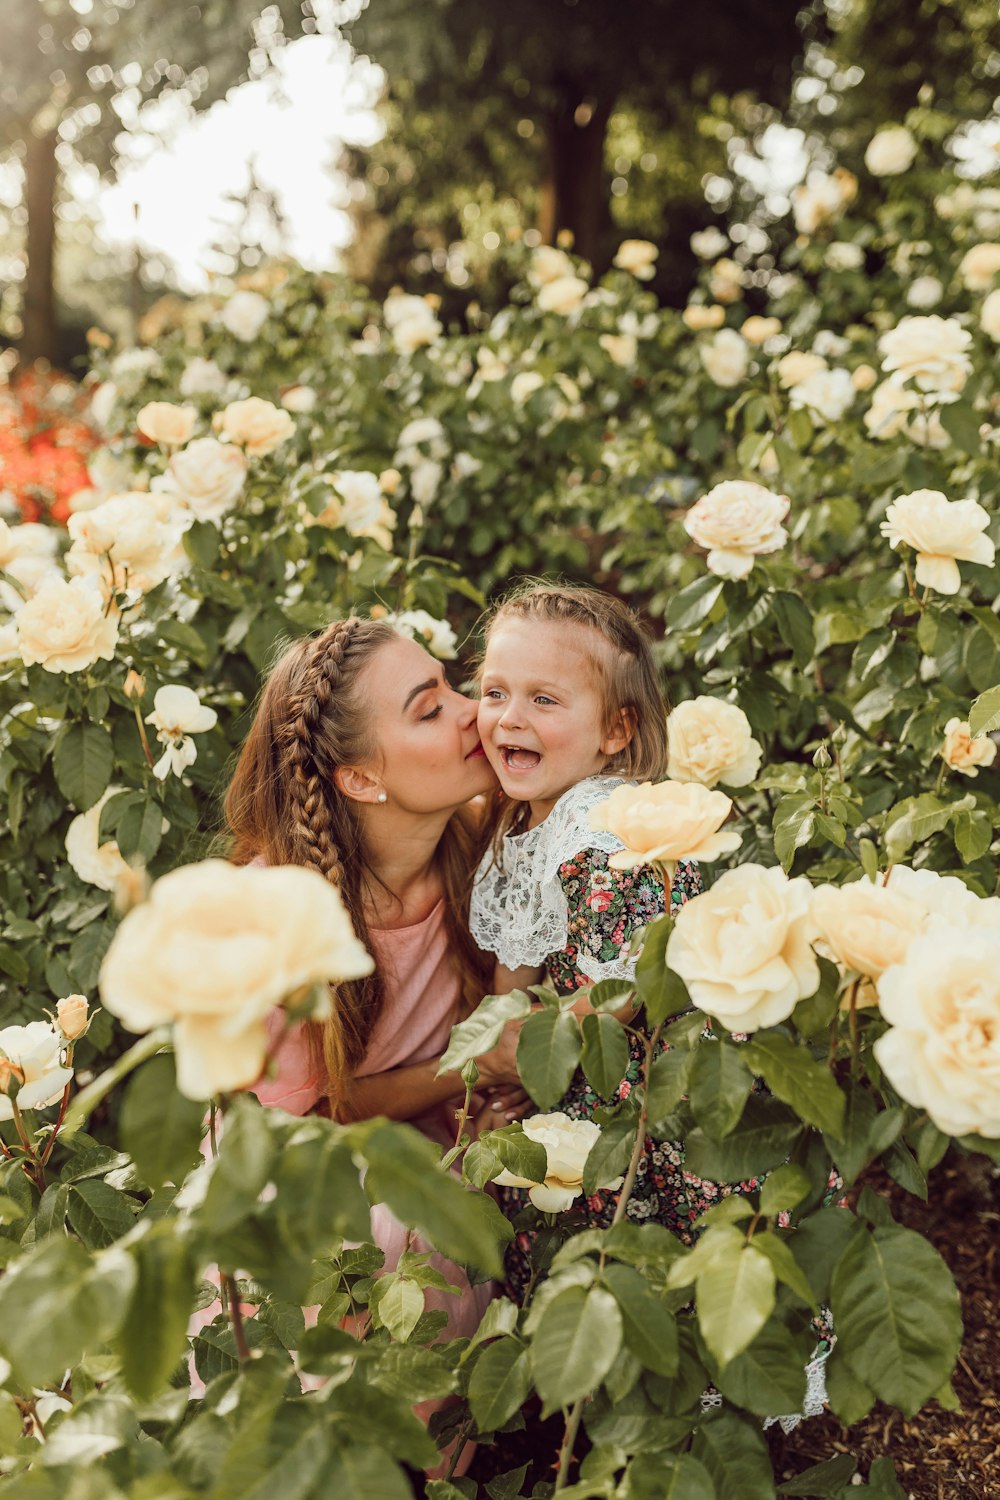 femme embrassant la joue de la fille entre le jardin de roses blanches